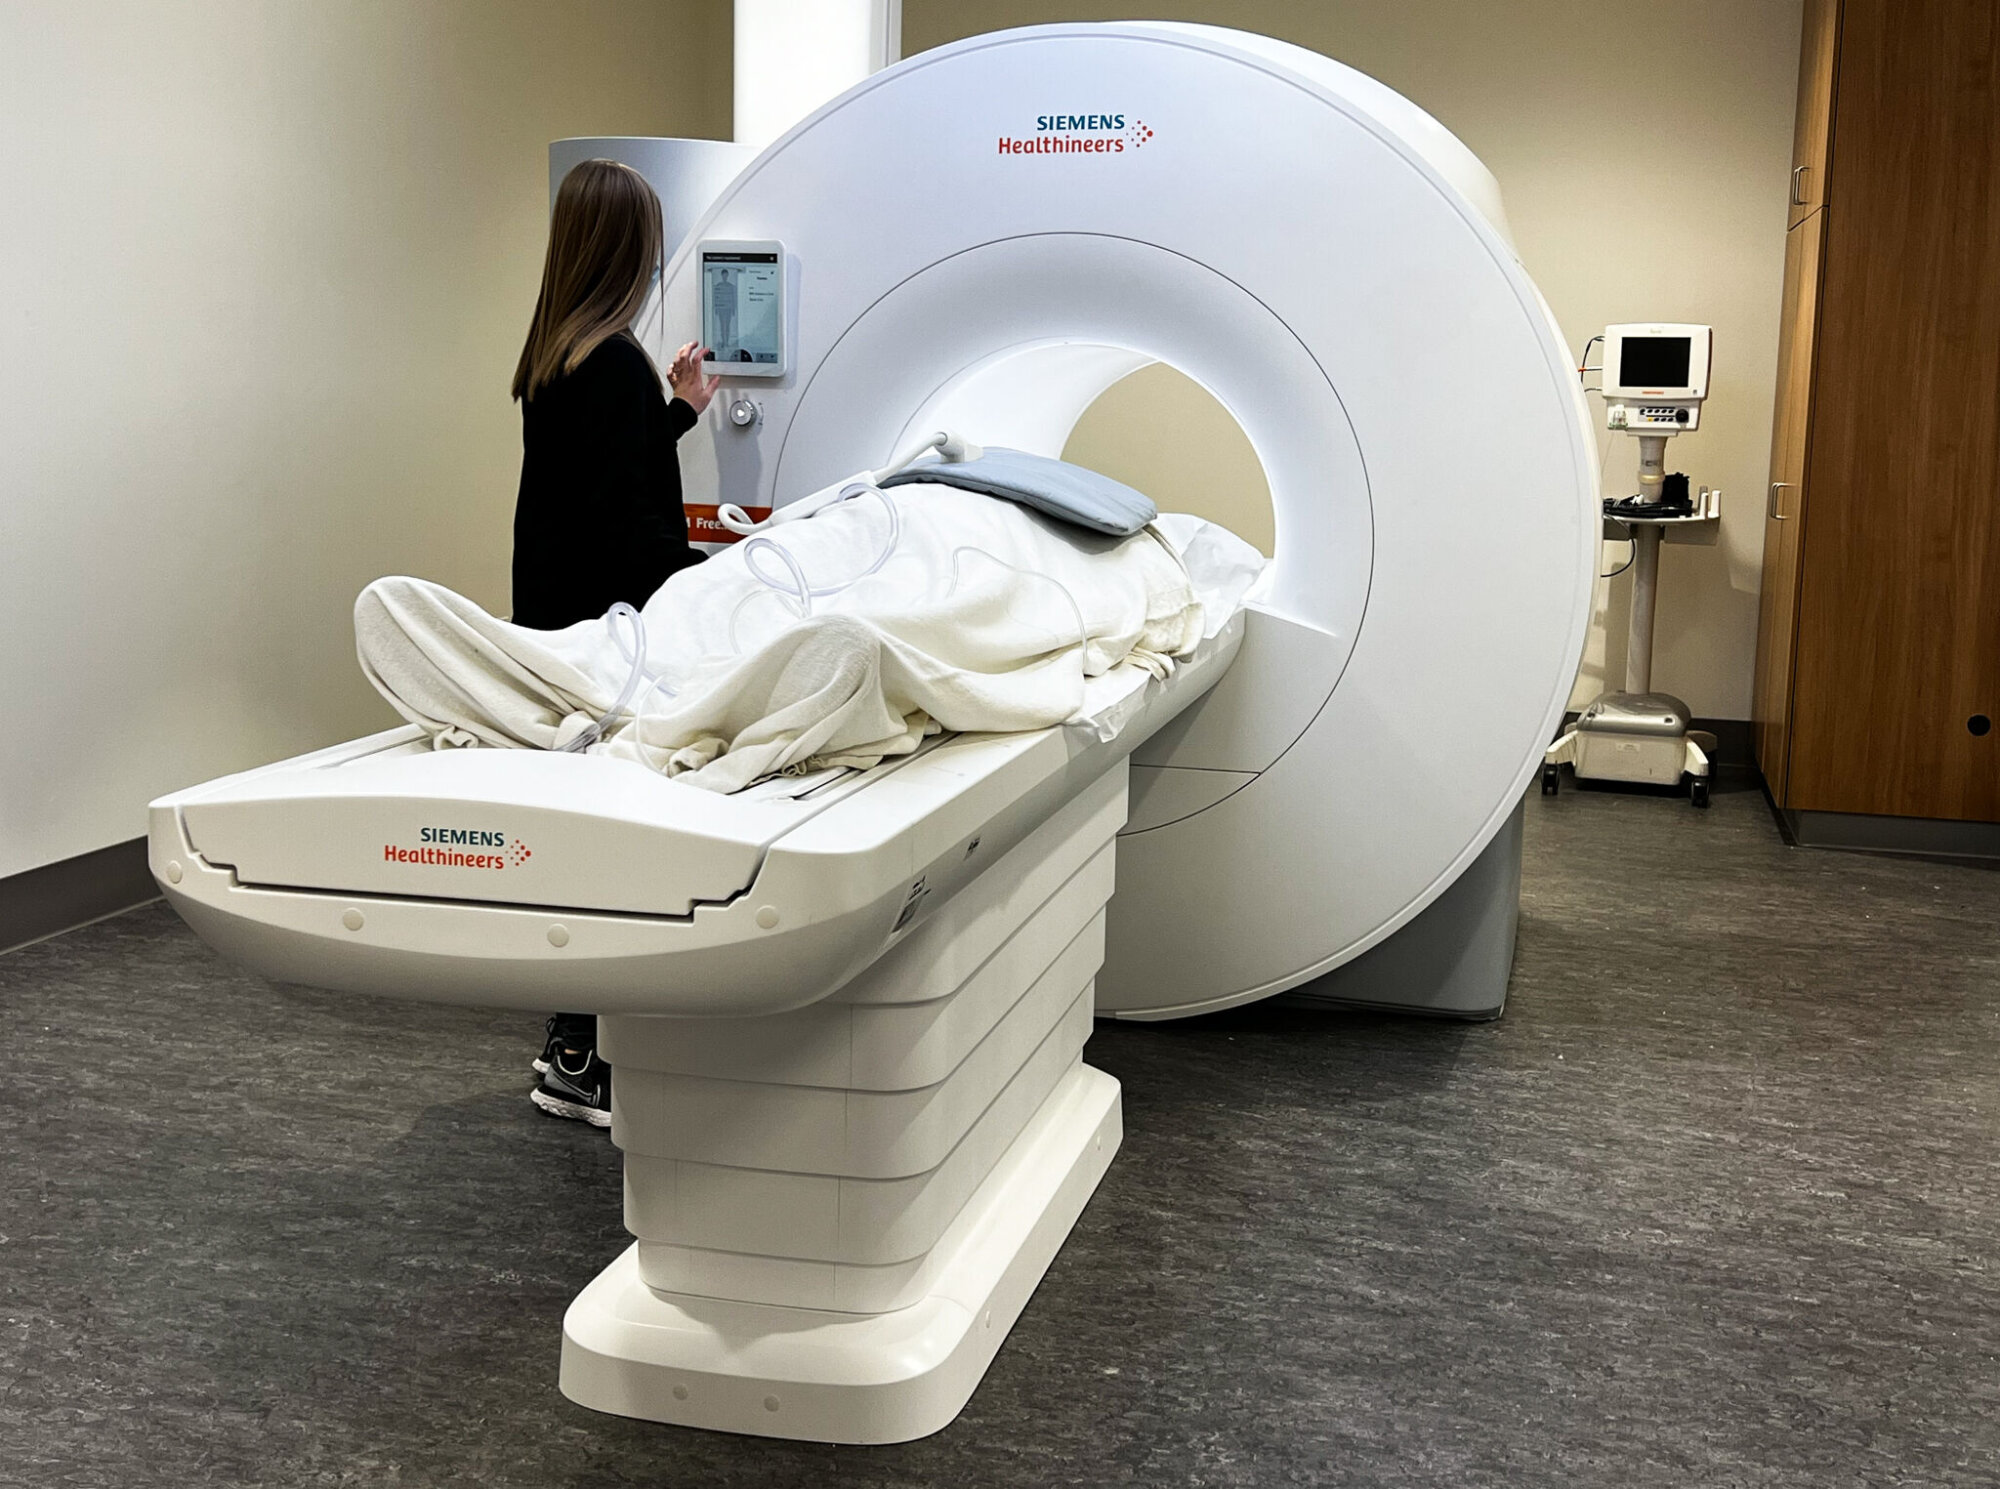 MRI technology